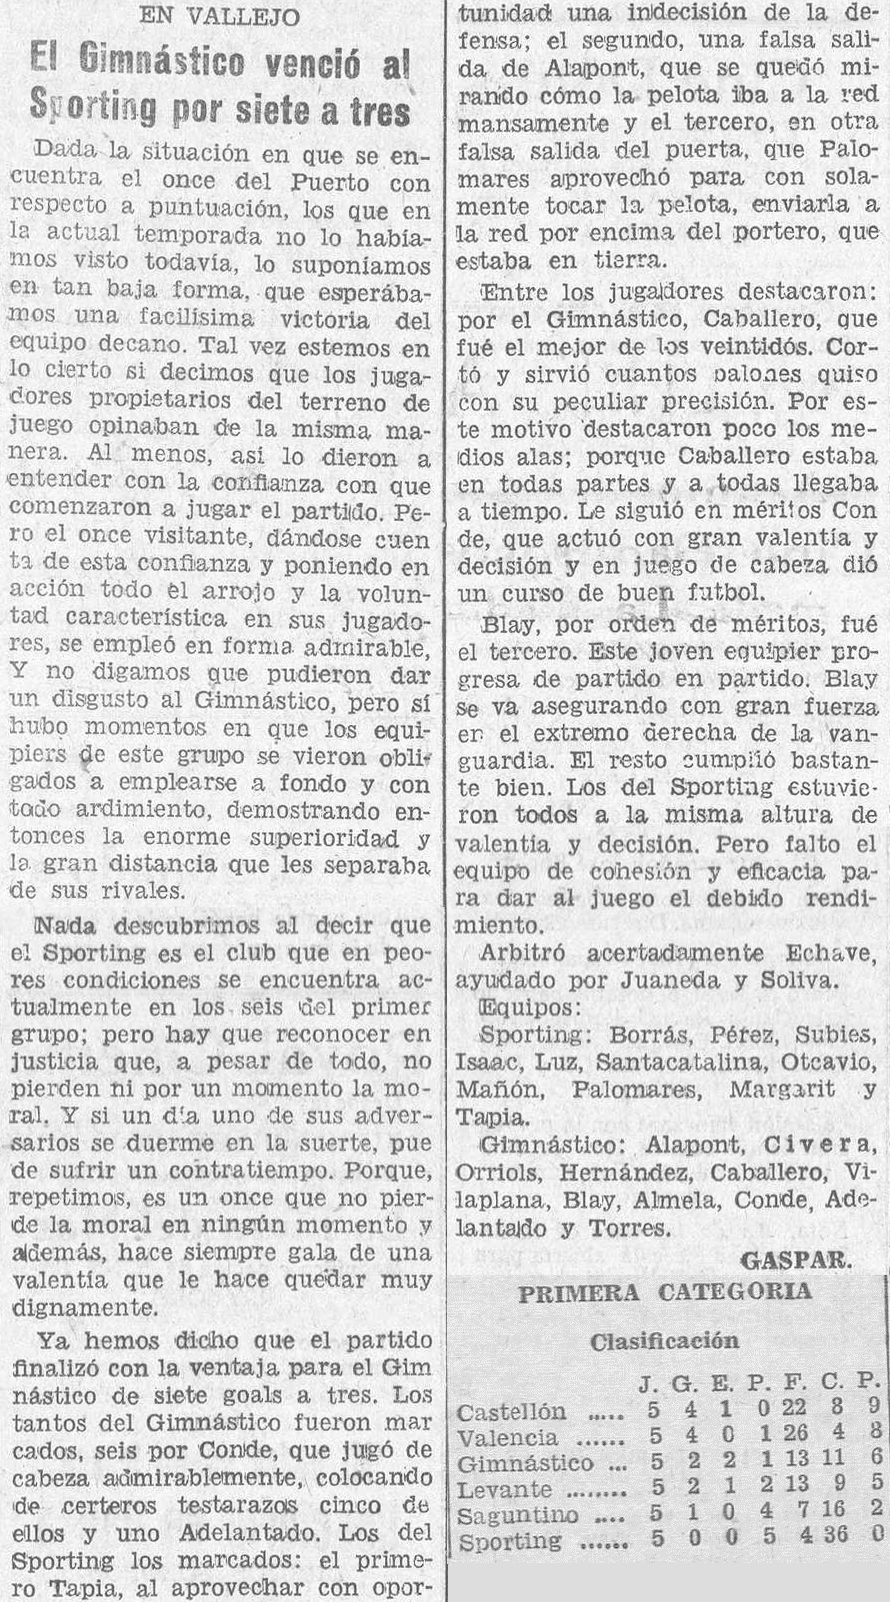 1932.10.16 (16 октября 1932), Гимнастико - Спортинг Сагунто, 7-3.png